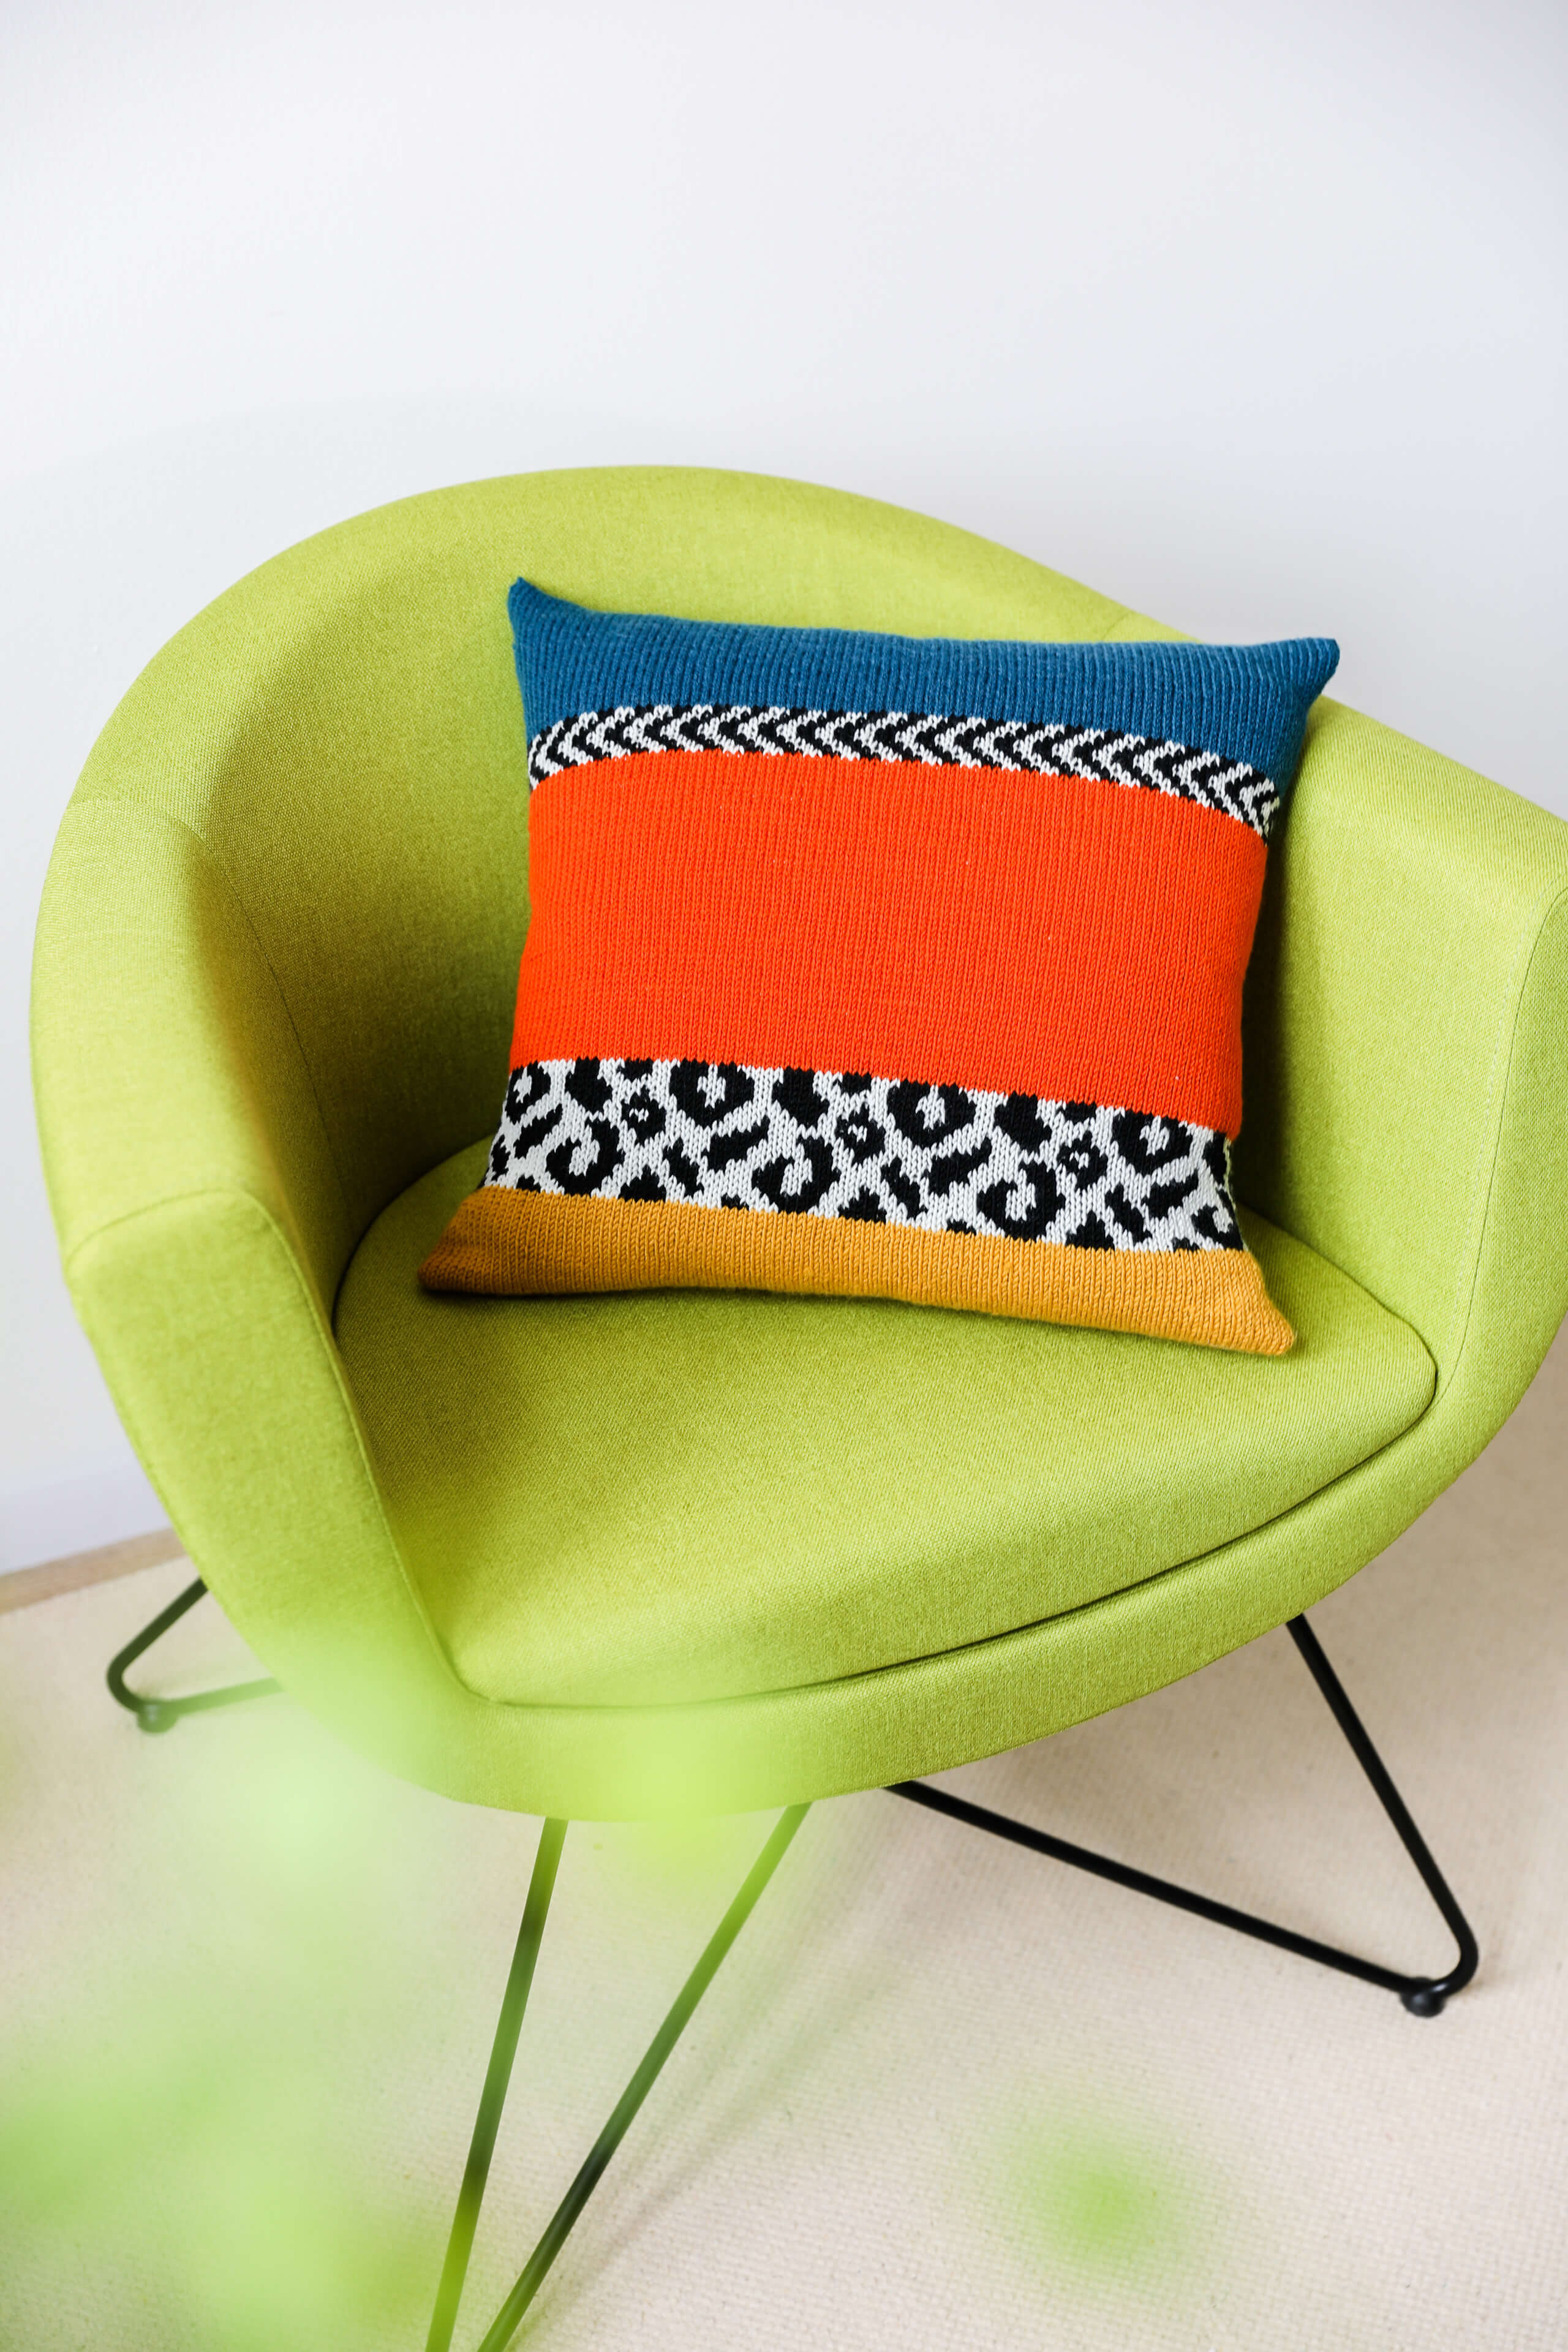 grüner Stuhl mit buntem Kissen und Leoparden Applikation